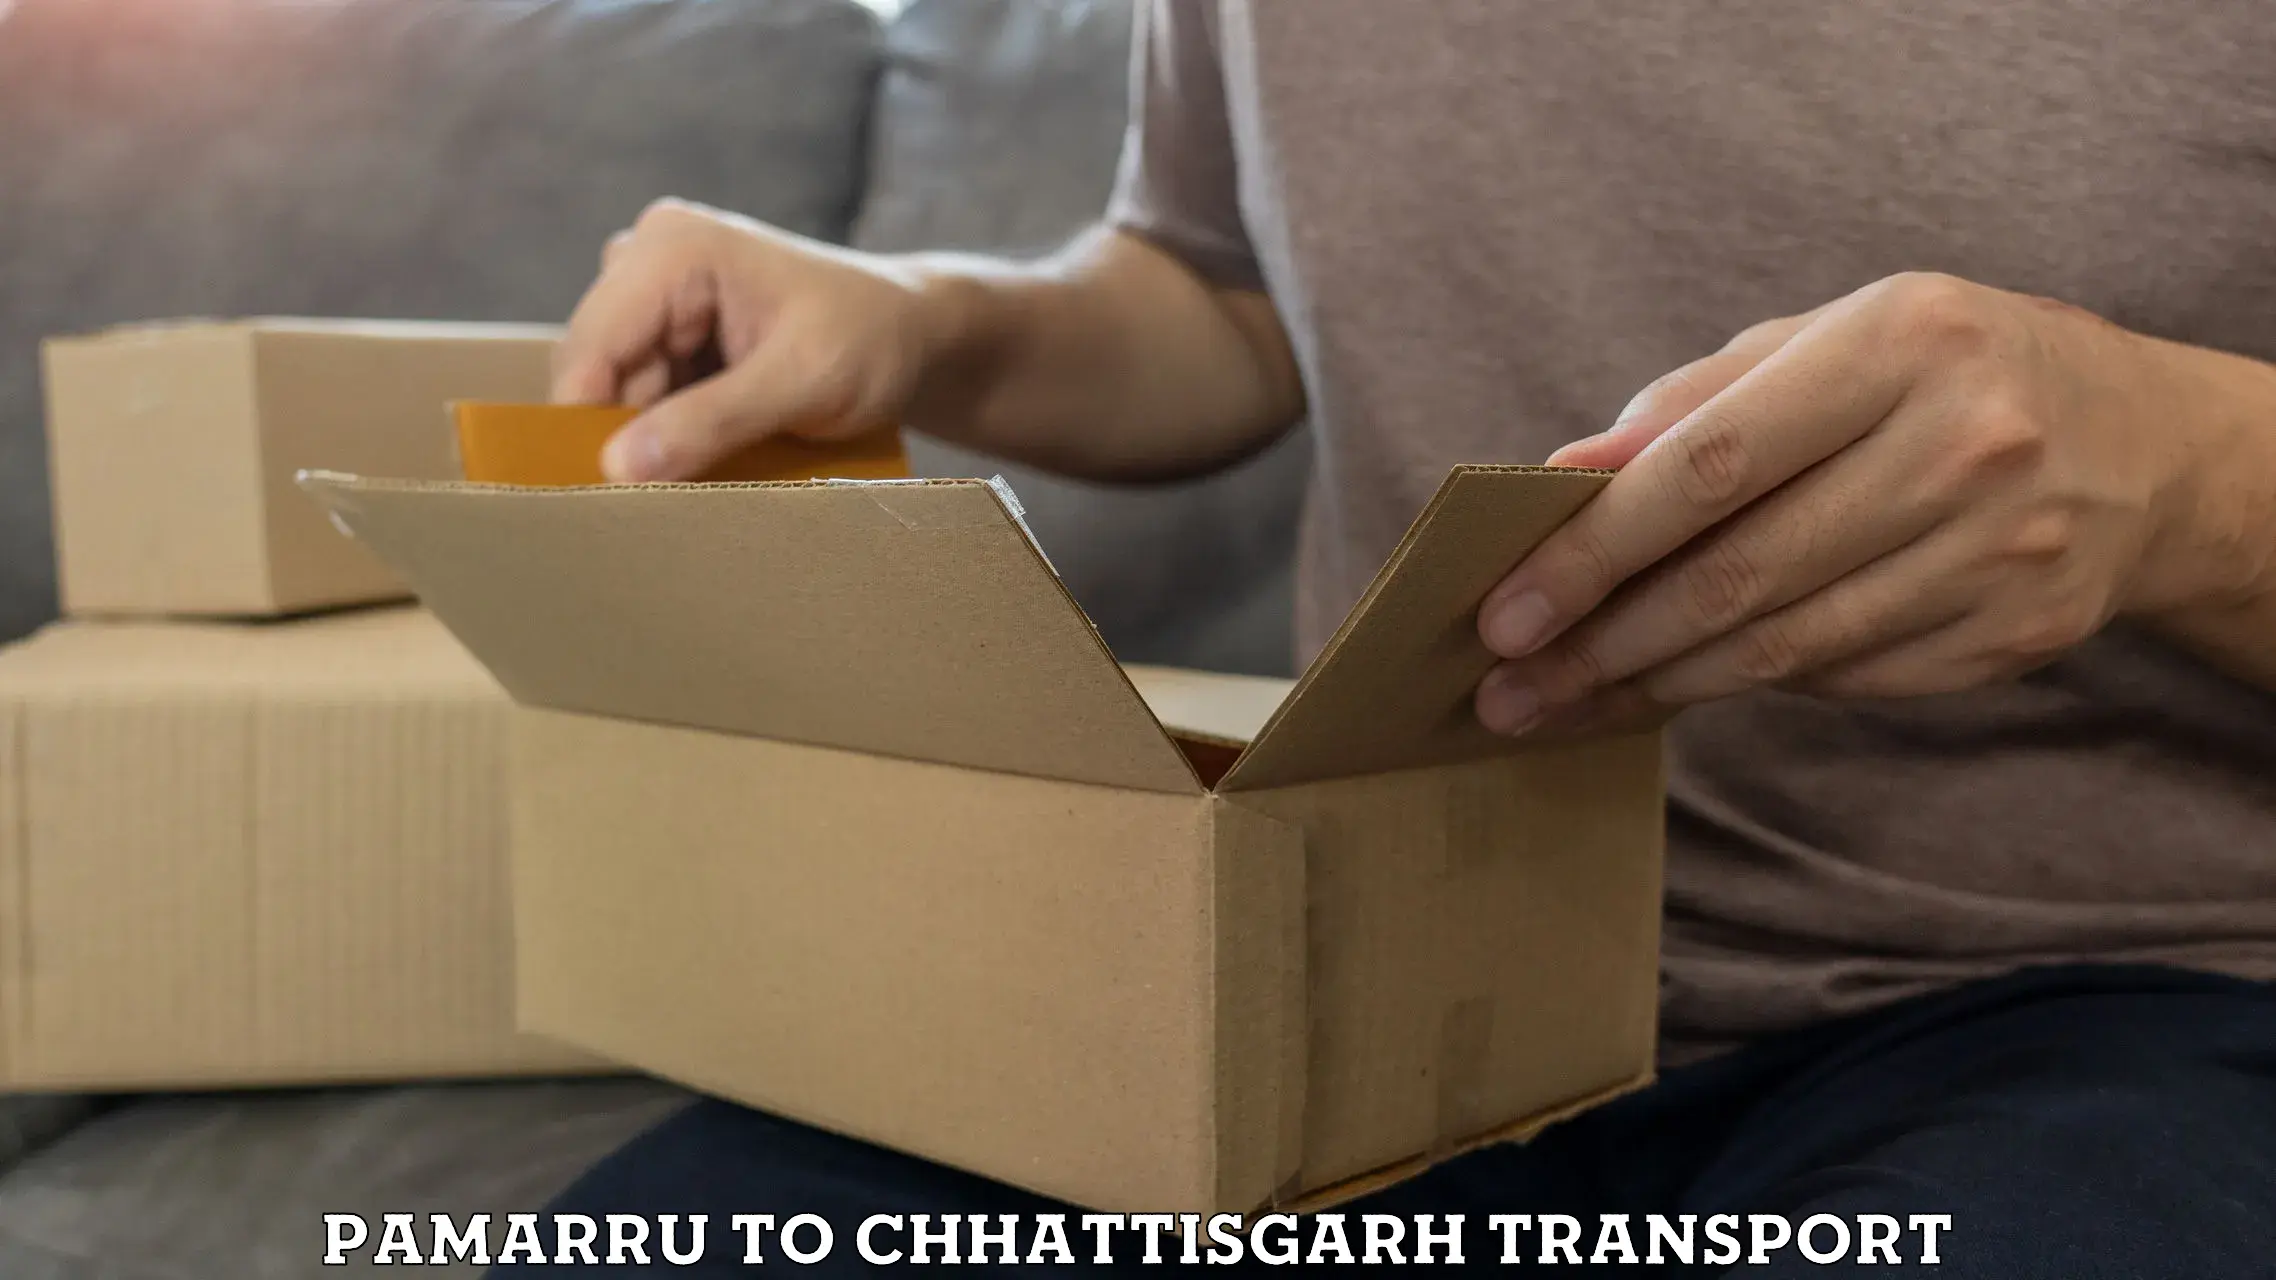 Furniture transport service Pamarru to Pathalgaon